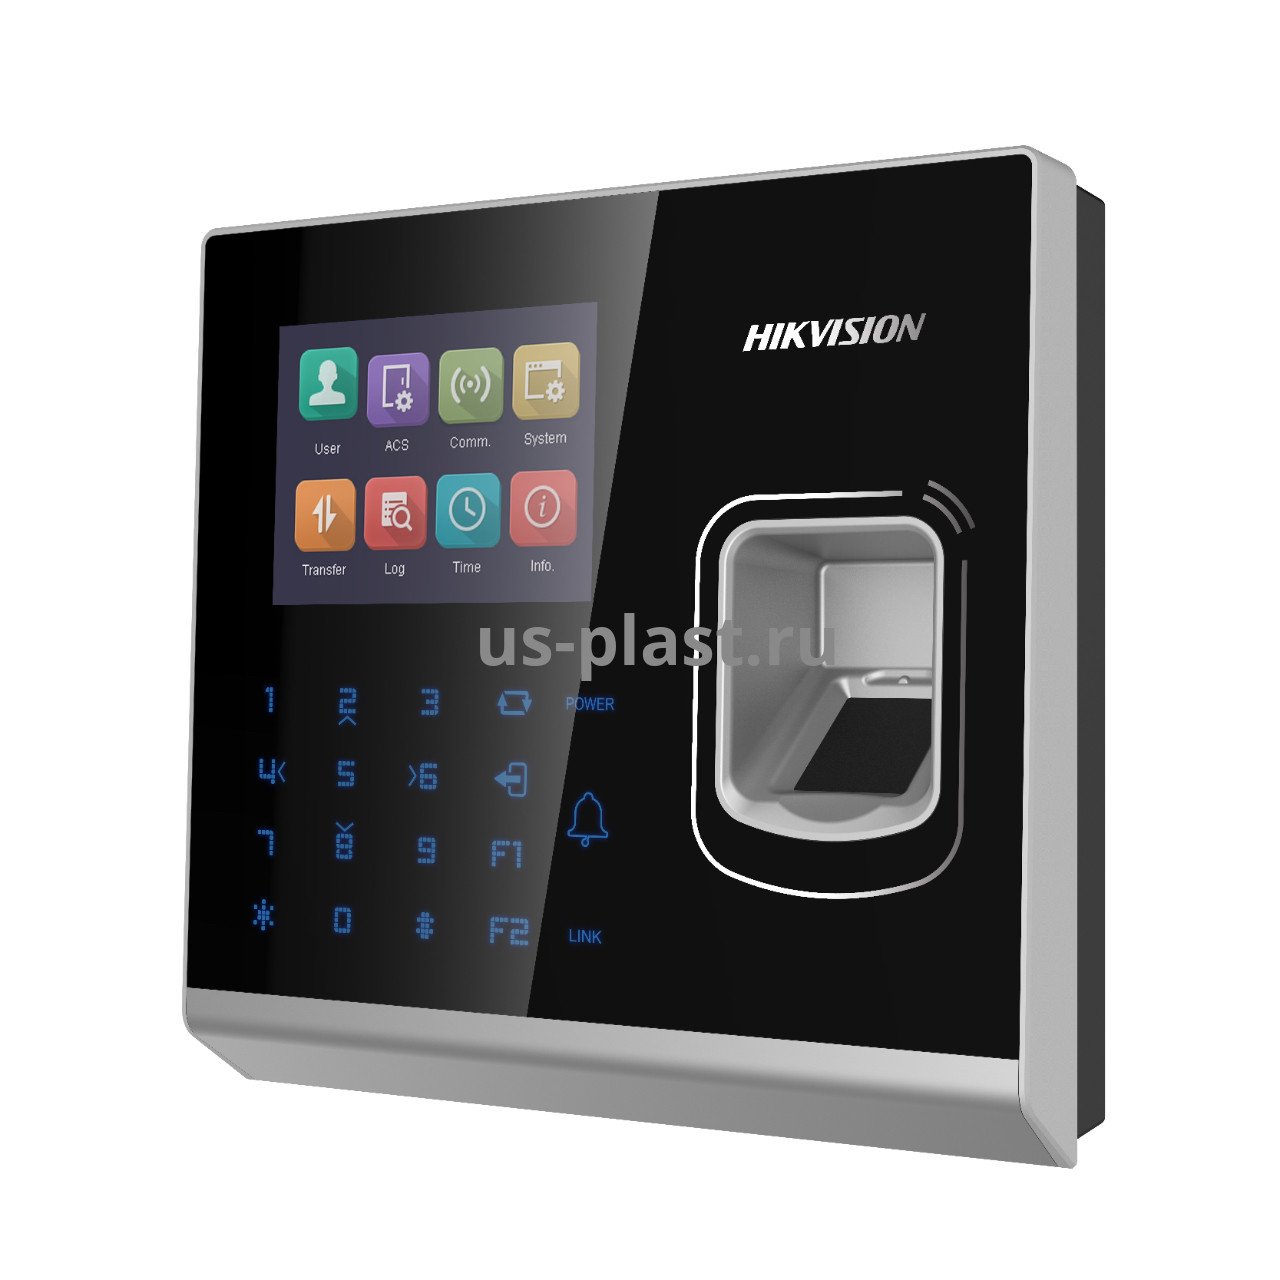 Hikvision DS-K1T201AMF автономный терминал доступа со считывателем отпечатков пальцев и карт MIFARE. Фото N2